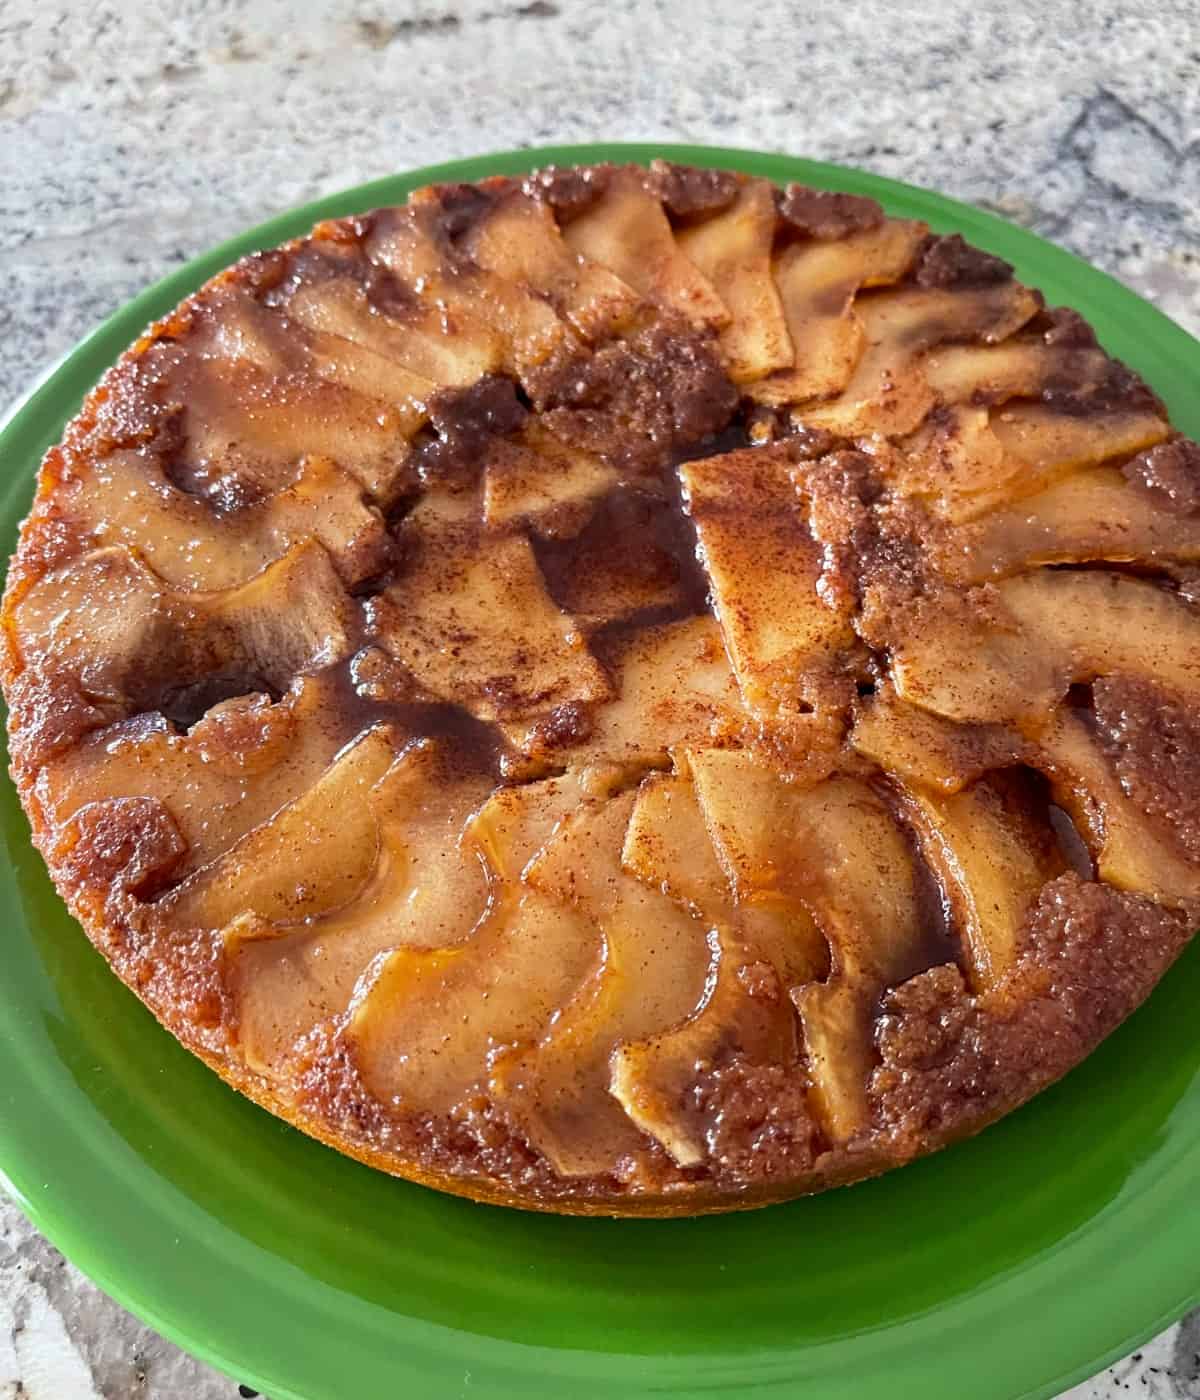 Fresh baked cinnamon apple cake on green serving platter.